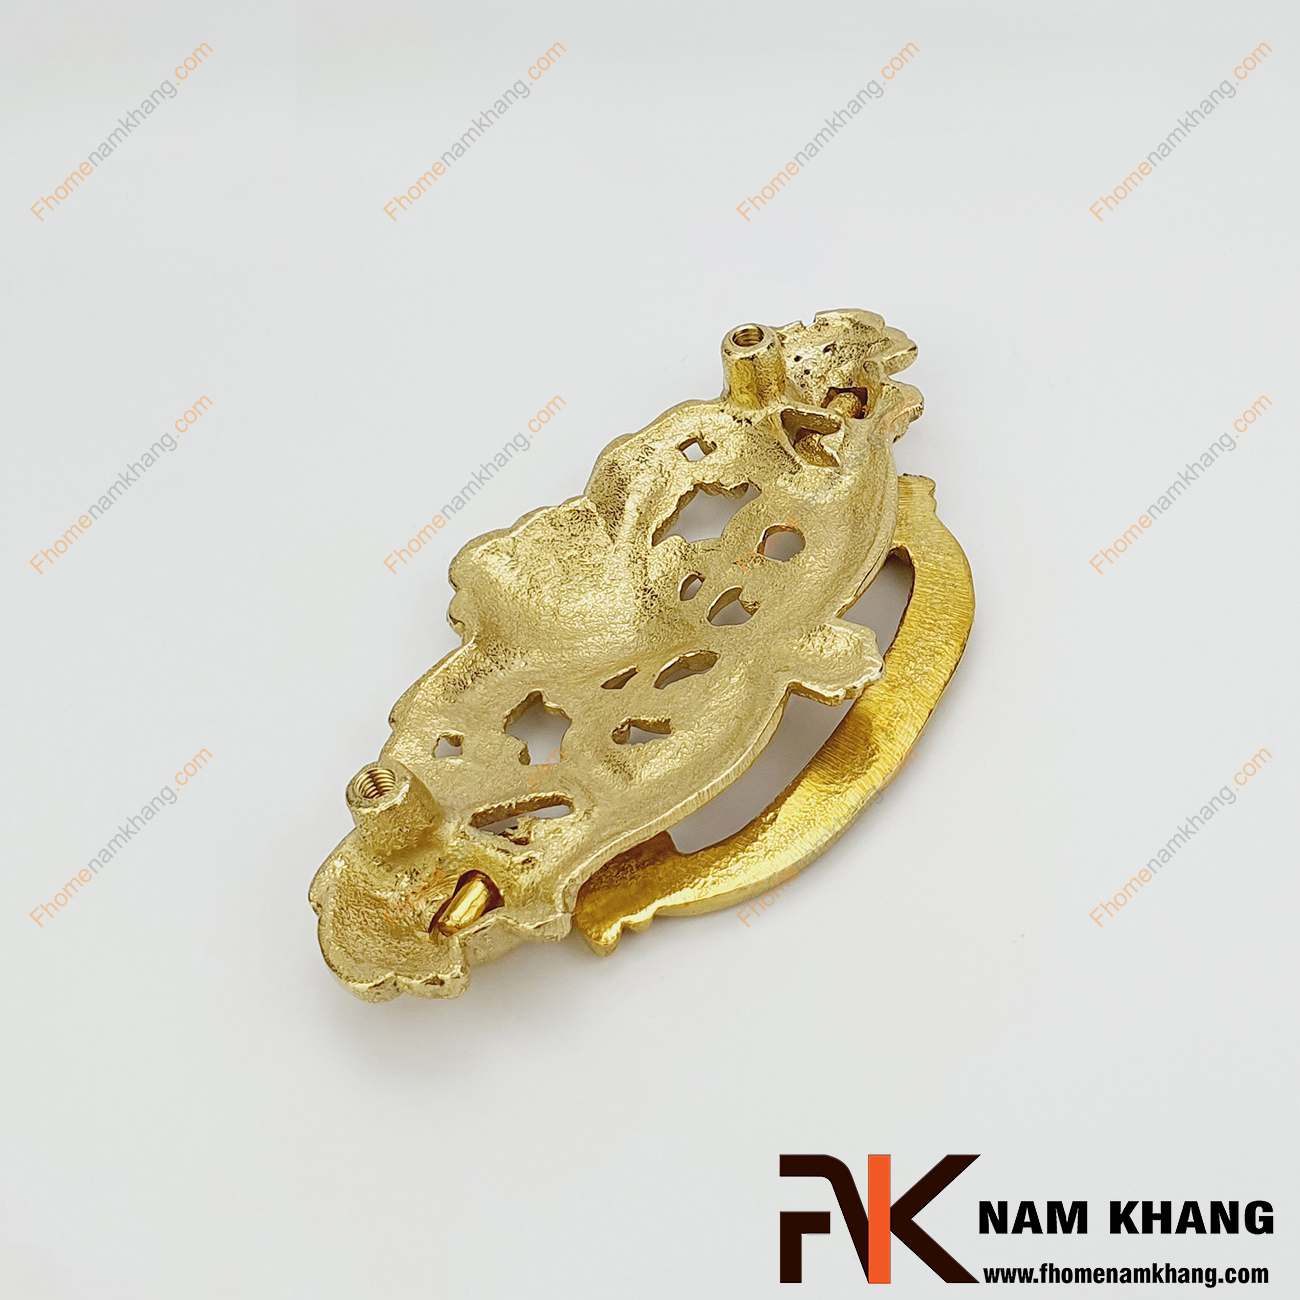 Tay nắm tủ dạng vòng đồng vàng NK253-75DV sản phẩm từ chất liệu đồng cao cấp. Loại tay nắm này có họa tiết độc đáo kiểu hoa vàng đối xứng mang lại sự cao cấp và thẩm  mĩ cao.